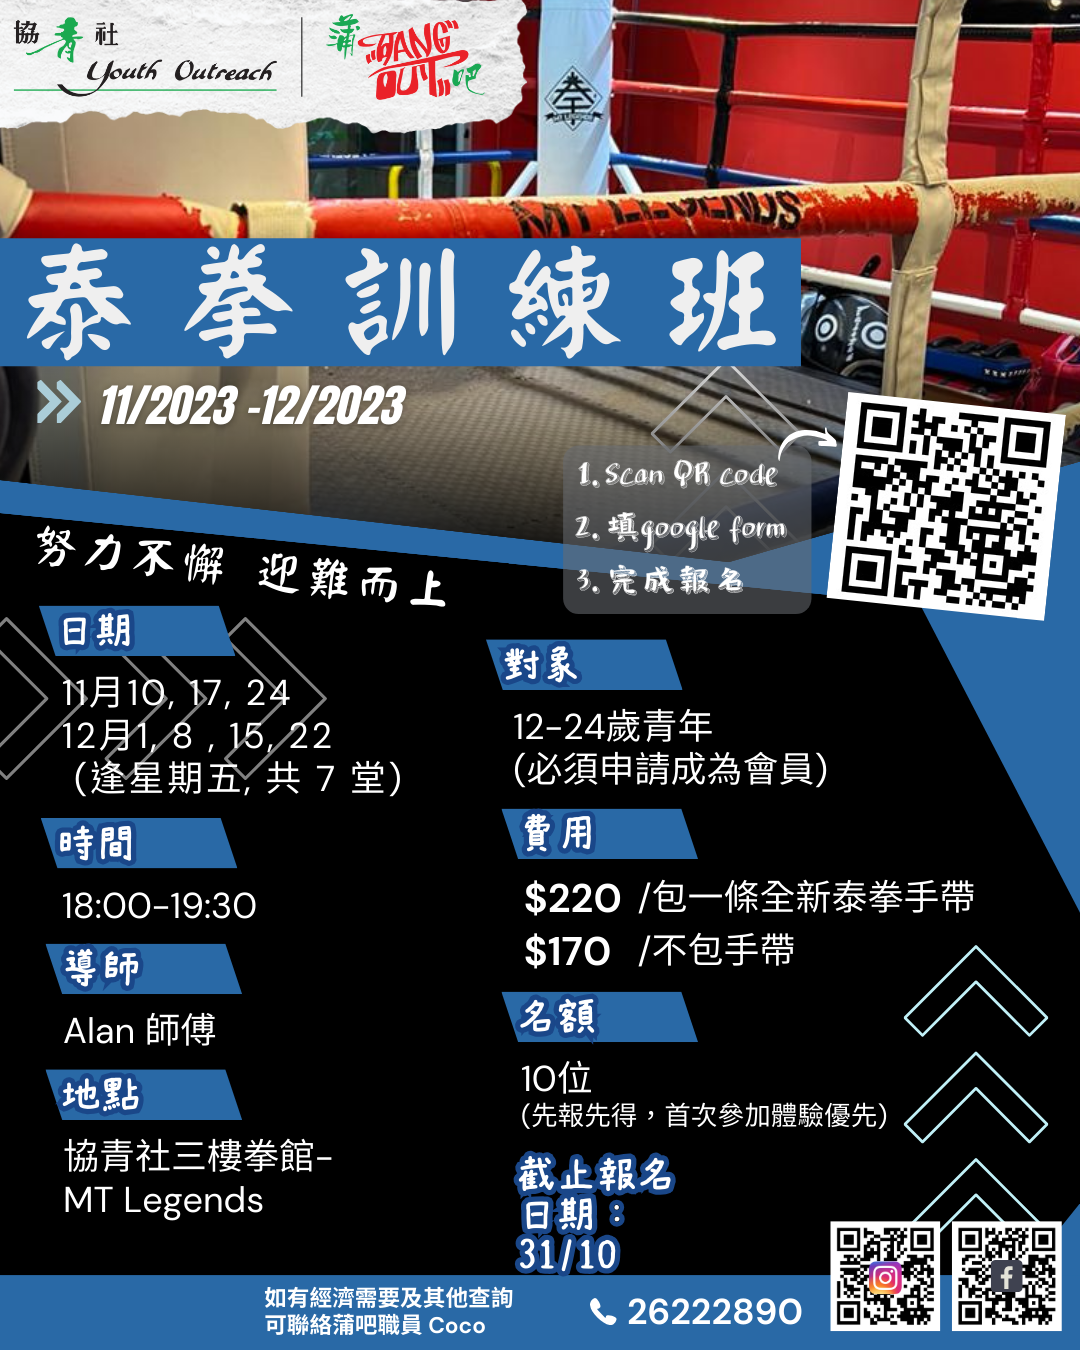 會員泰拳訓練 (12至24歲)